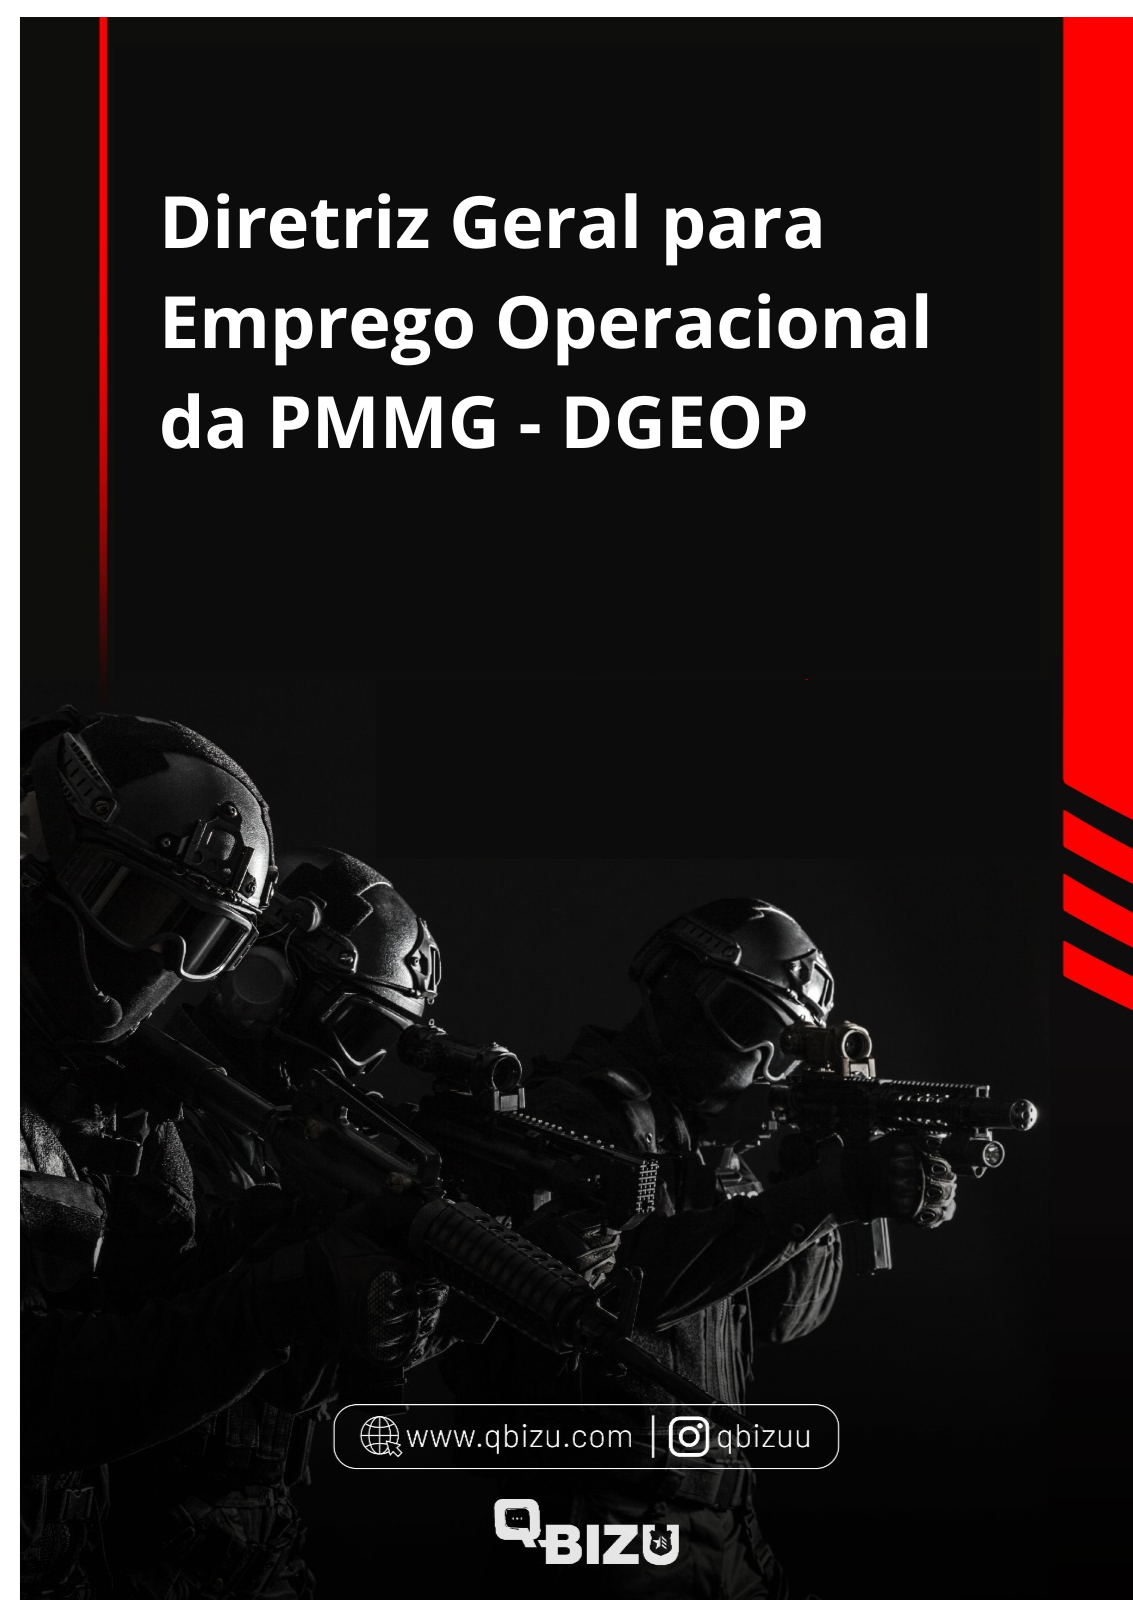 Aula Diretriz Geral para Emprego Operacional da PMMG (DGEOp) nº 3.01.01/2019–CG de Diretriz Geral para Emprego Operacional da PMMG - DGEOP